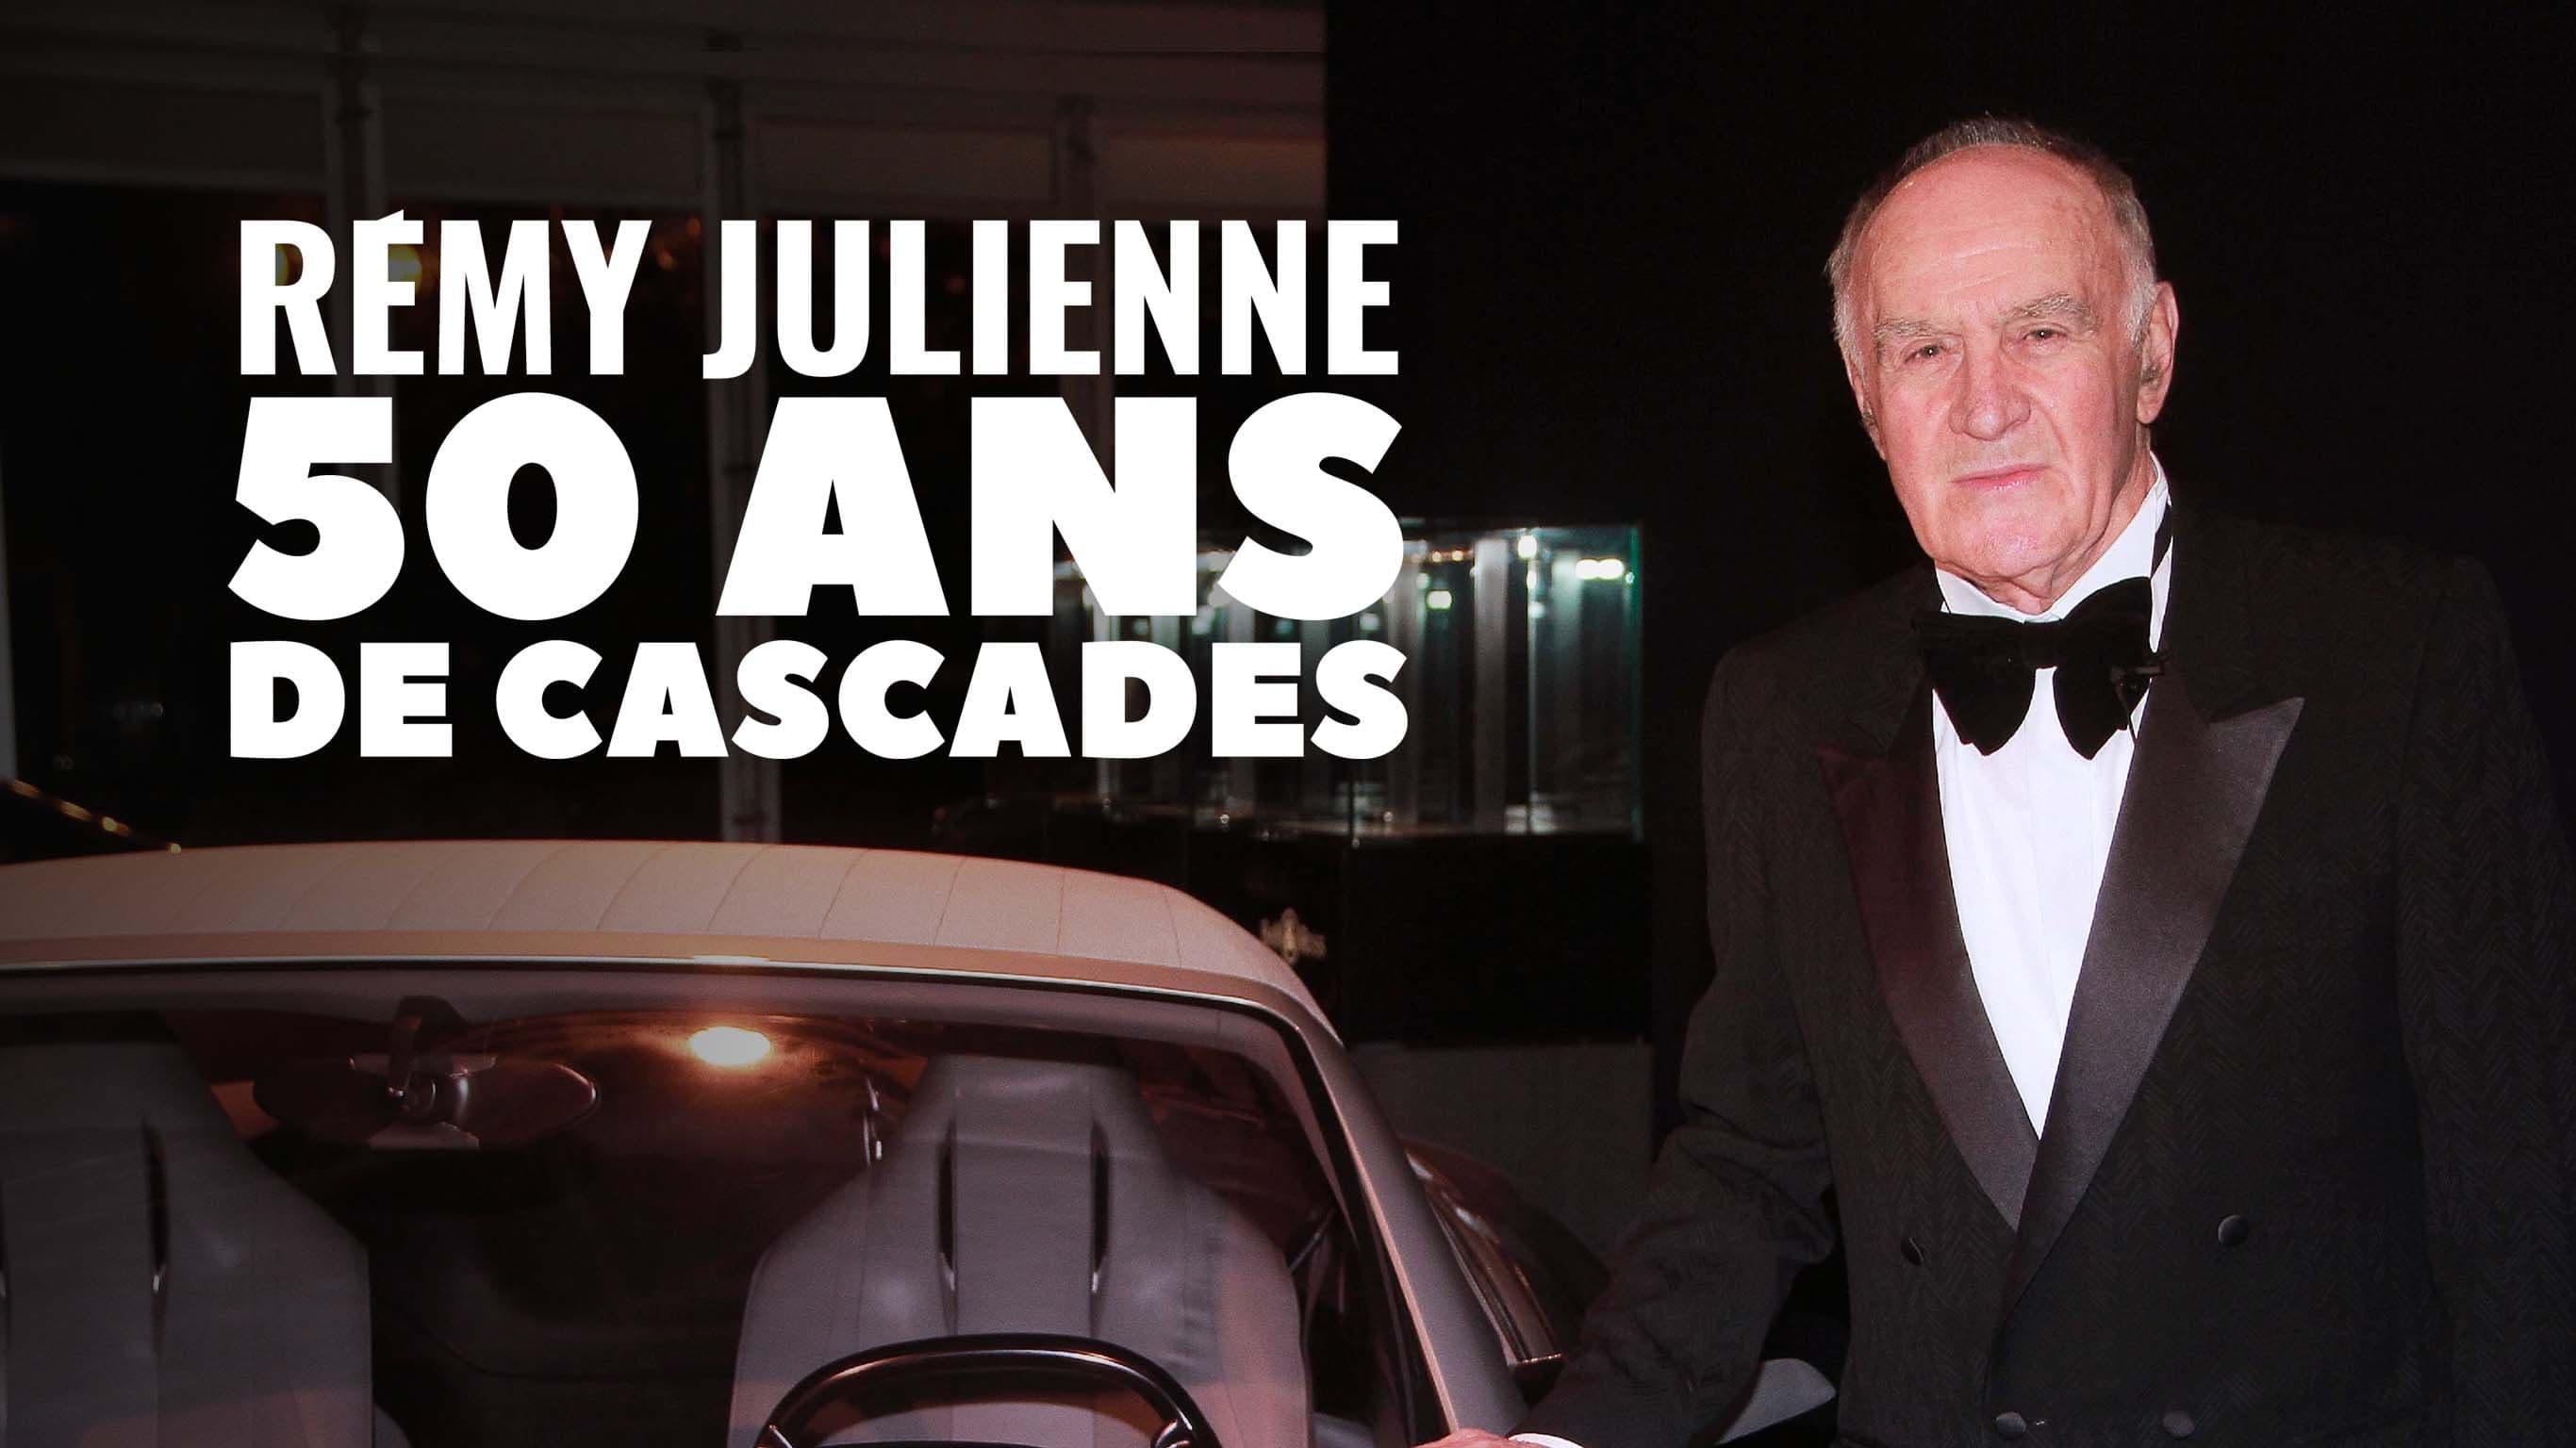 Remy Julienne 50 ans de cascades backdrop